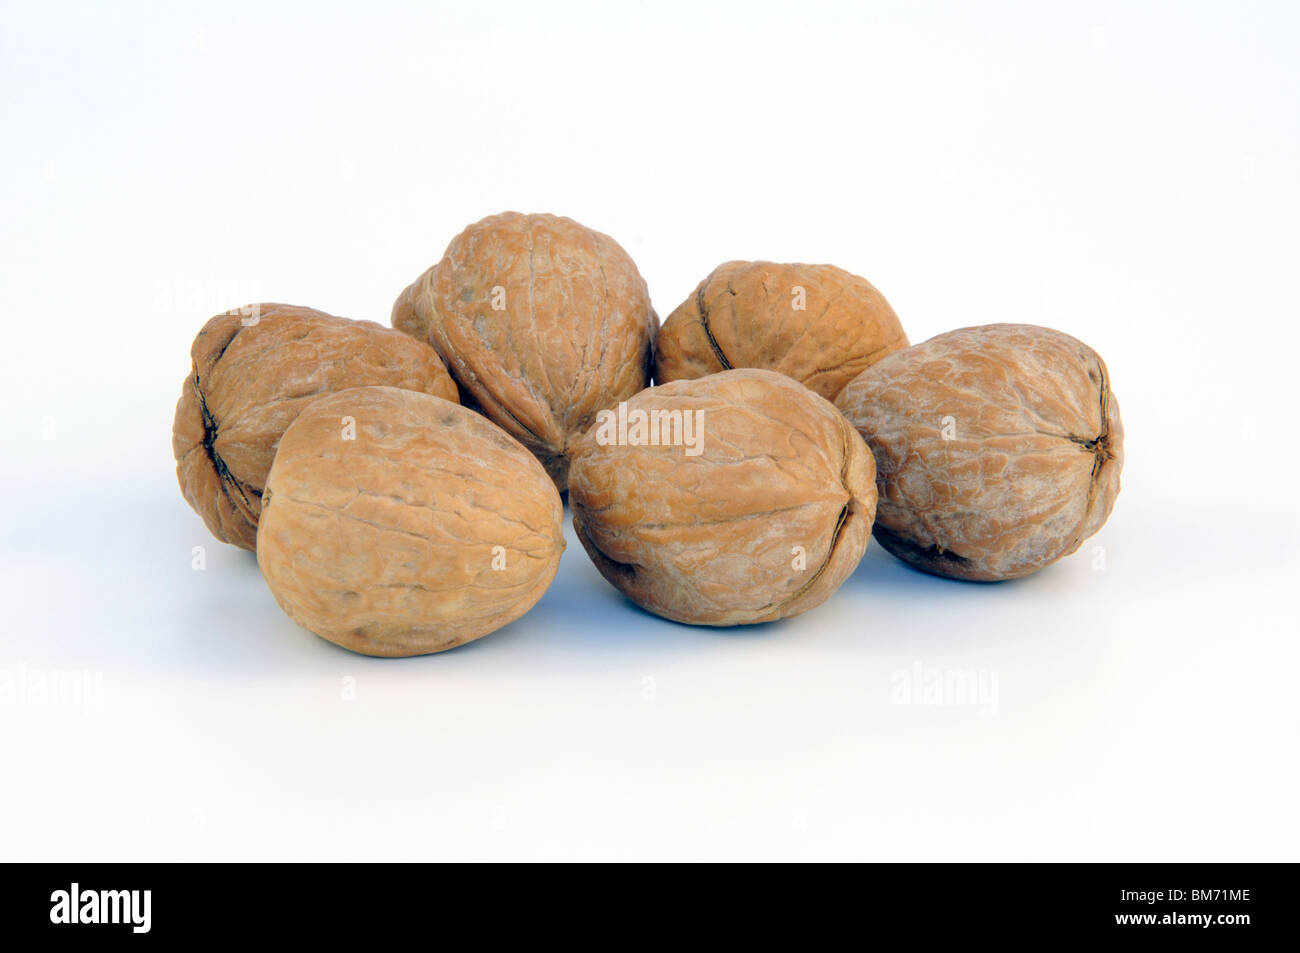 Walnuts in shells Stock Photo